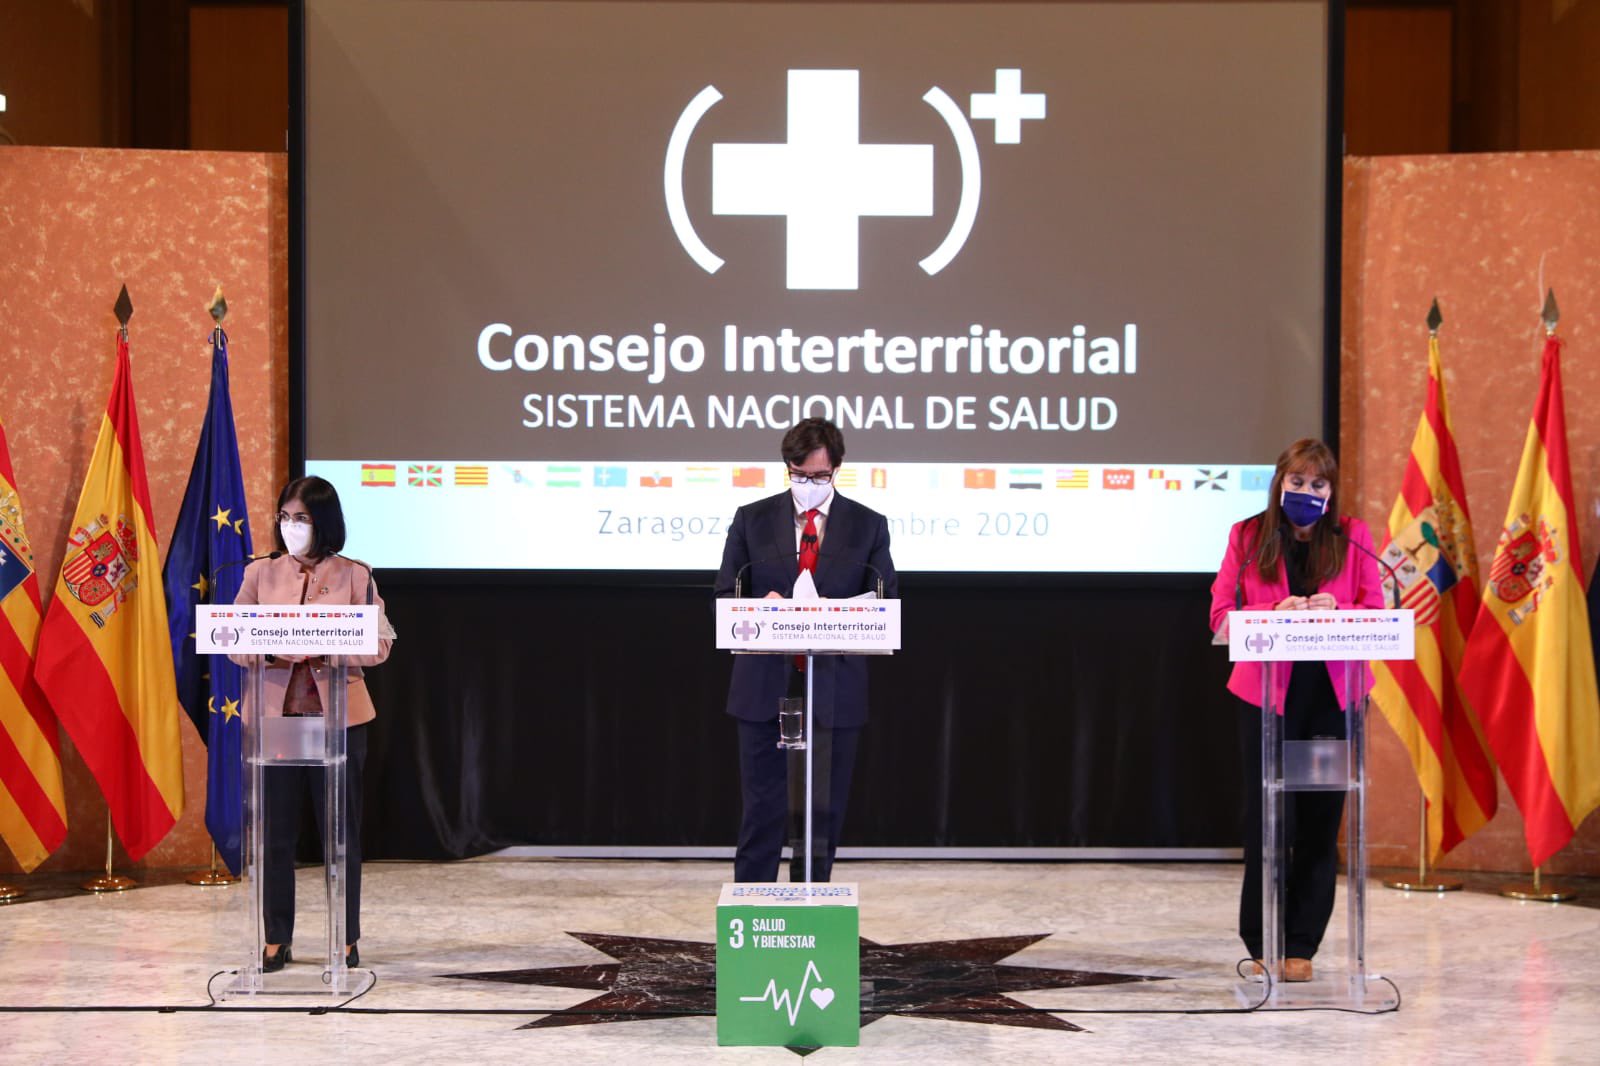 Interterritorial del Sistema Nacional de Salud desde Zaragoza

